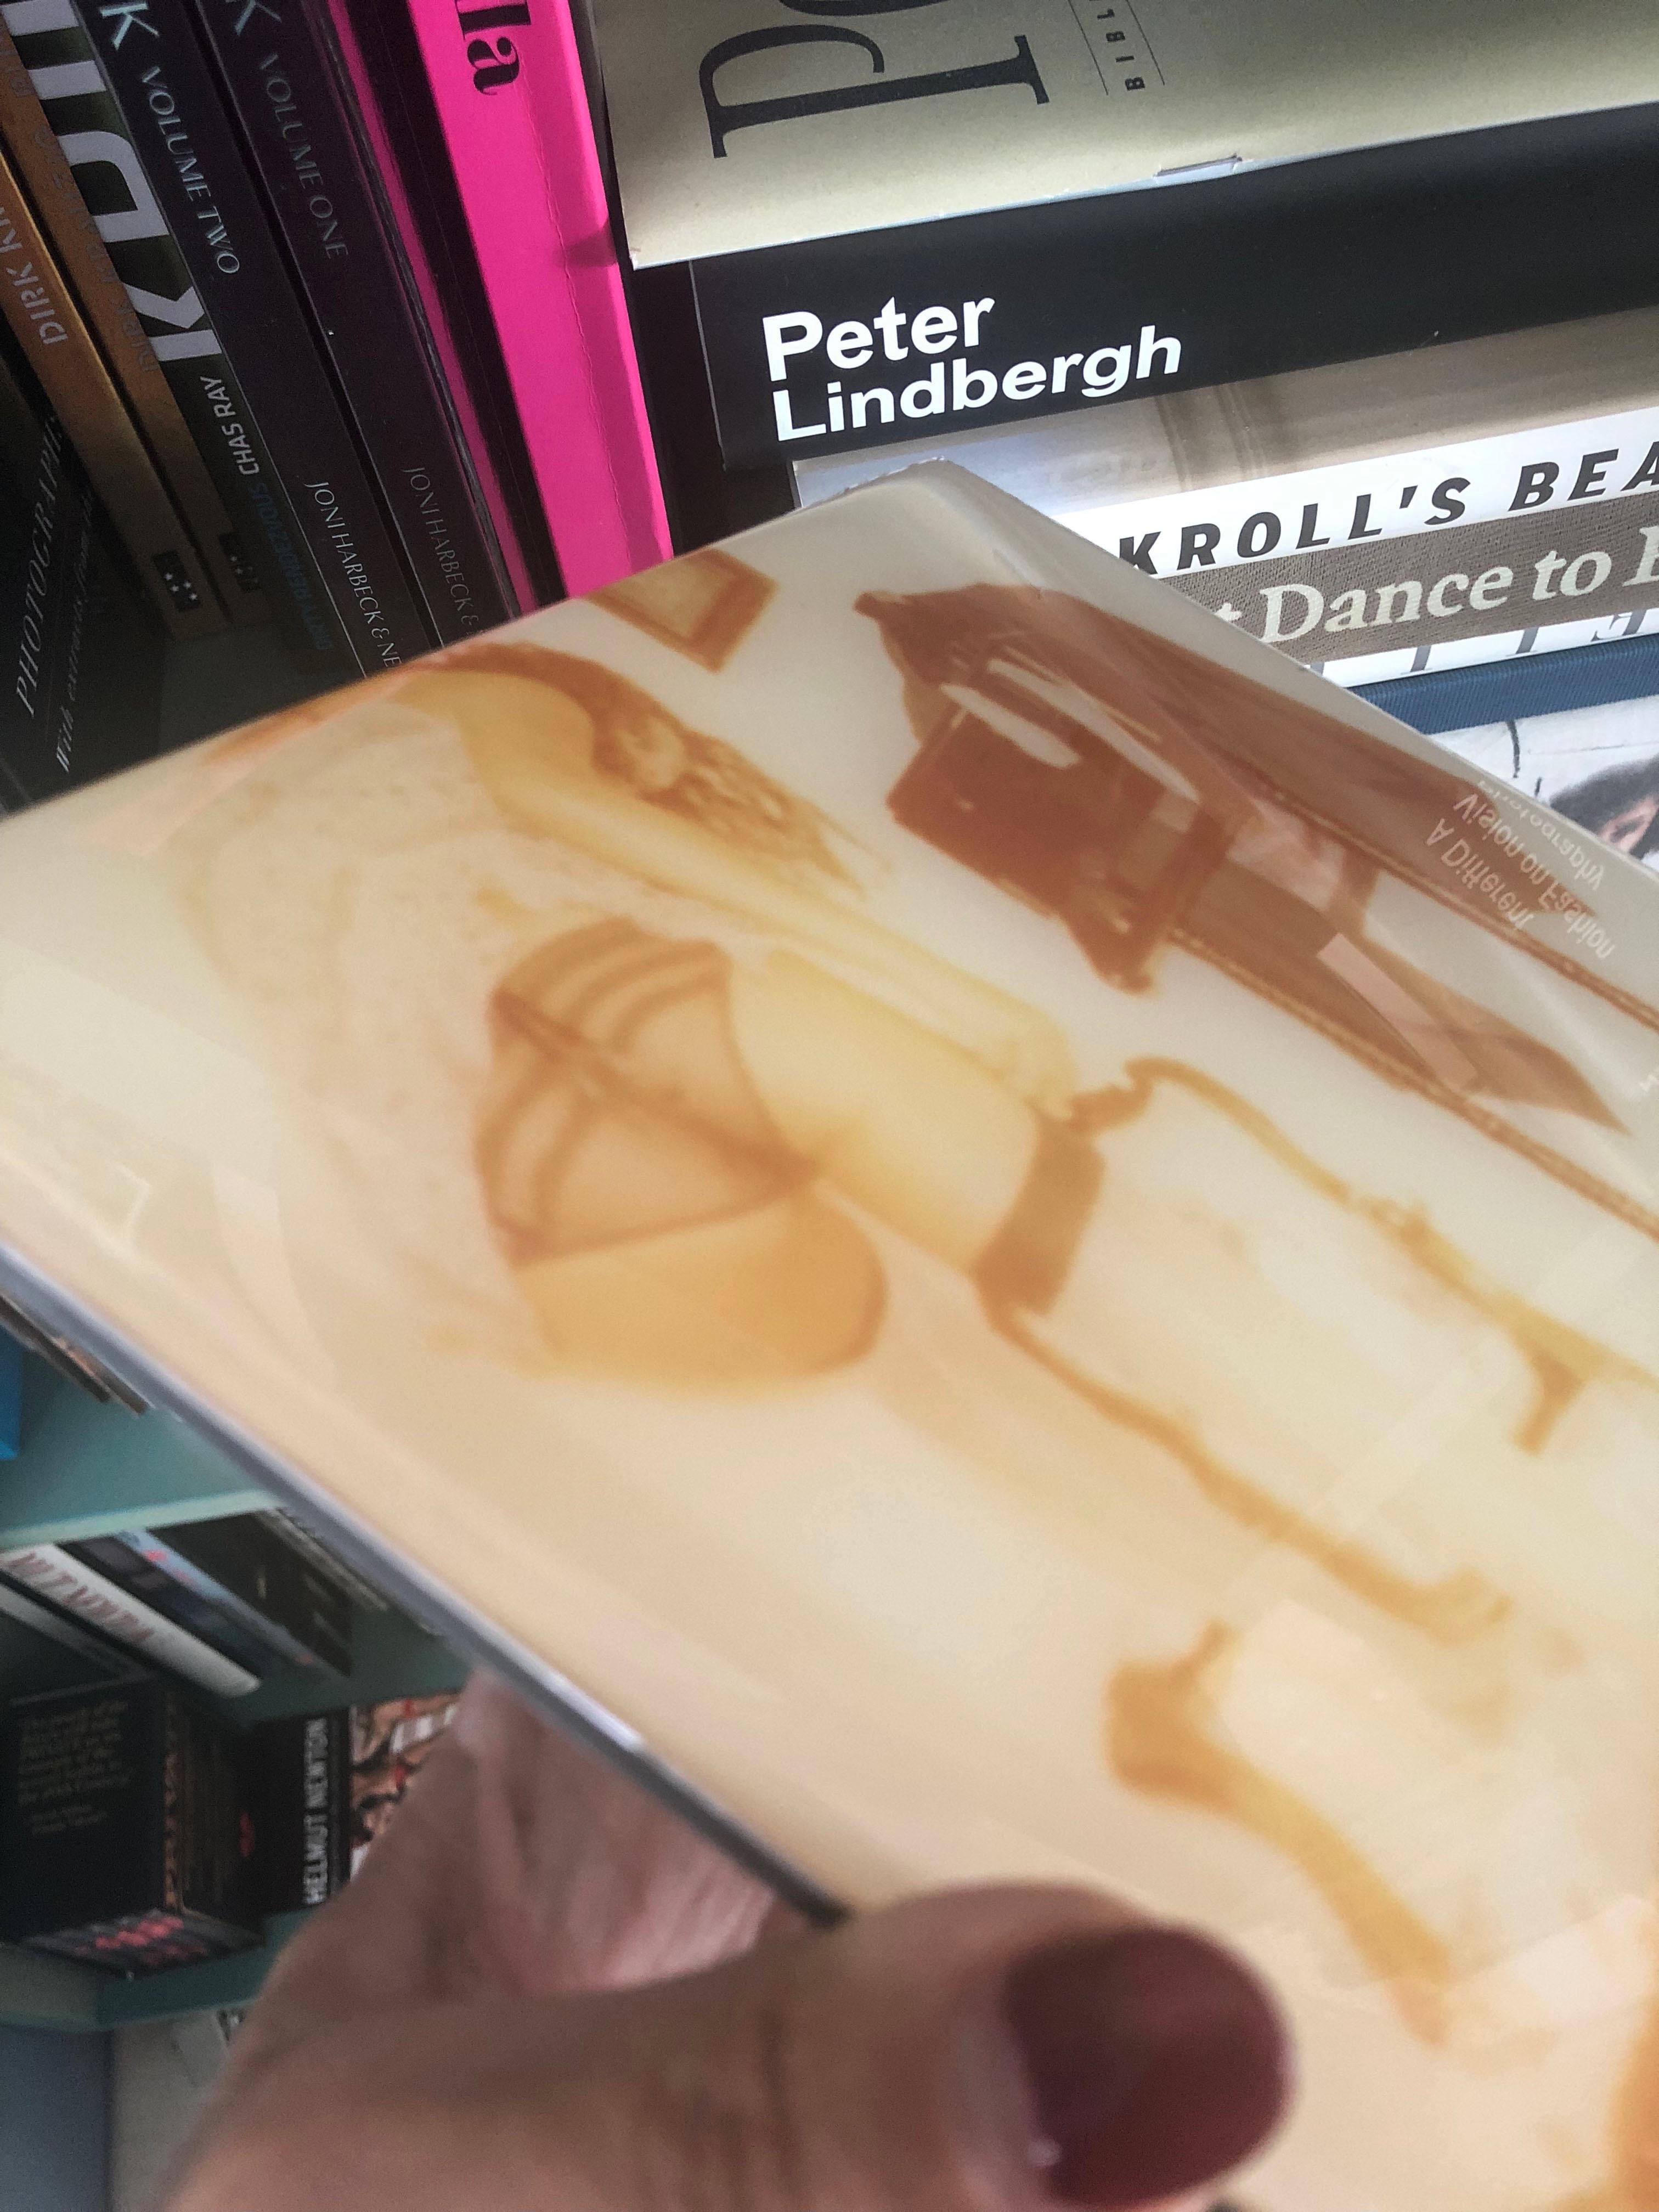 Oui, mon Cul #09, 2015
[Les Foxy Femmes de Carmen De Vos]

Auflage von 7. 
C-Print in Museumsqualität auf der Grundlage eines Polaroids.
Montiert auf Dibond 4mm - 20 x 20 cm.
Mit einer hochglänzenden Epoxidschicht für tiefe Intensität versehen.